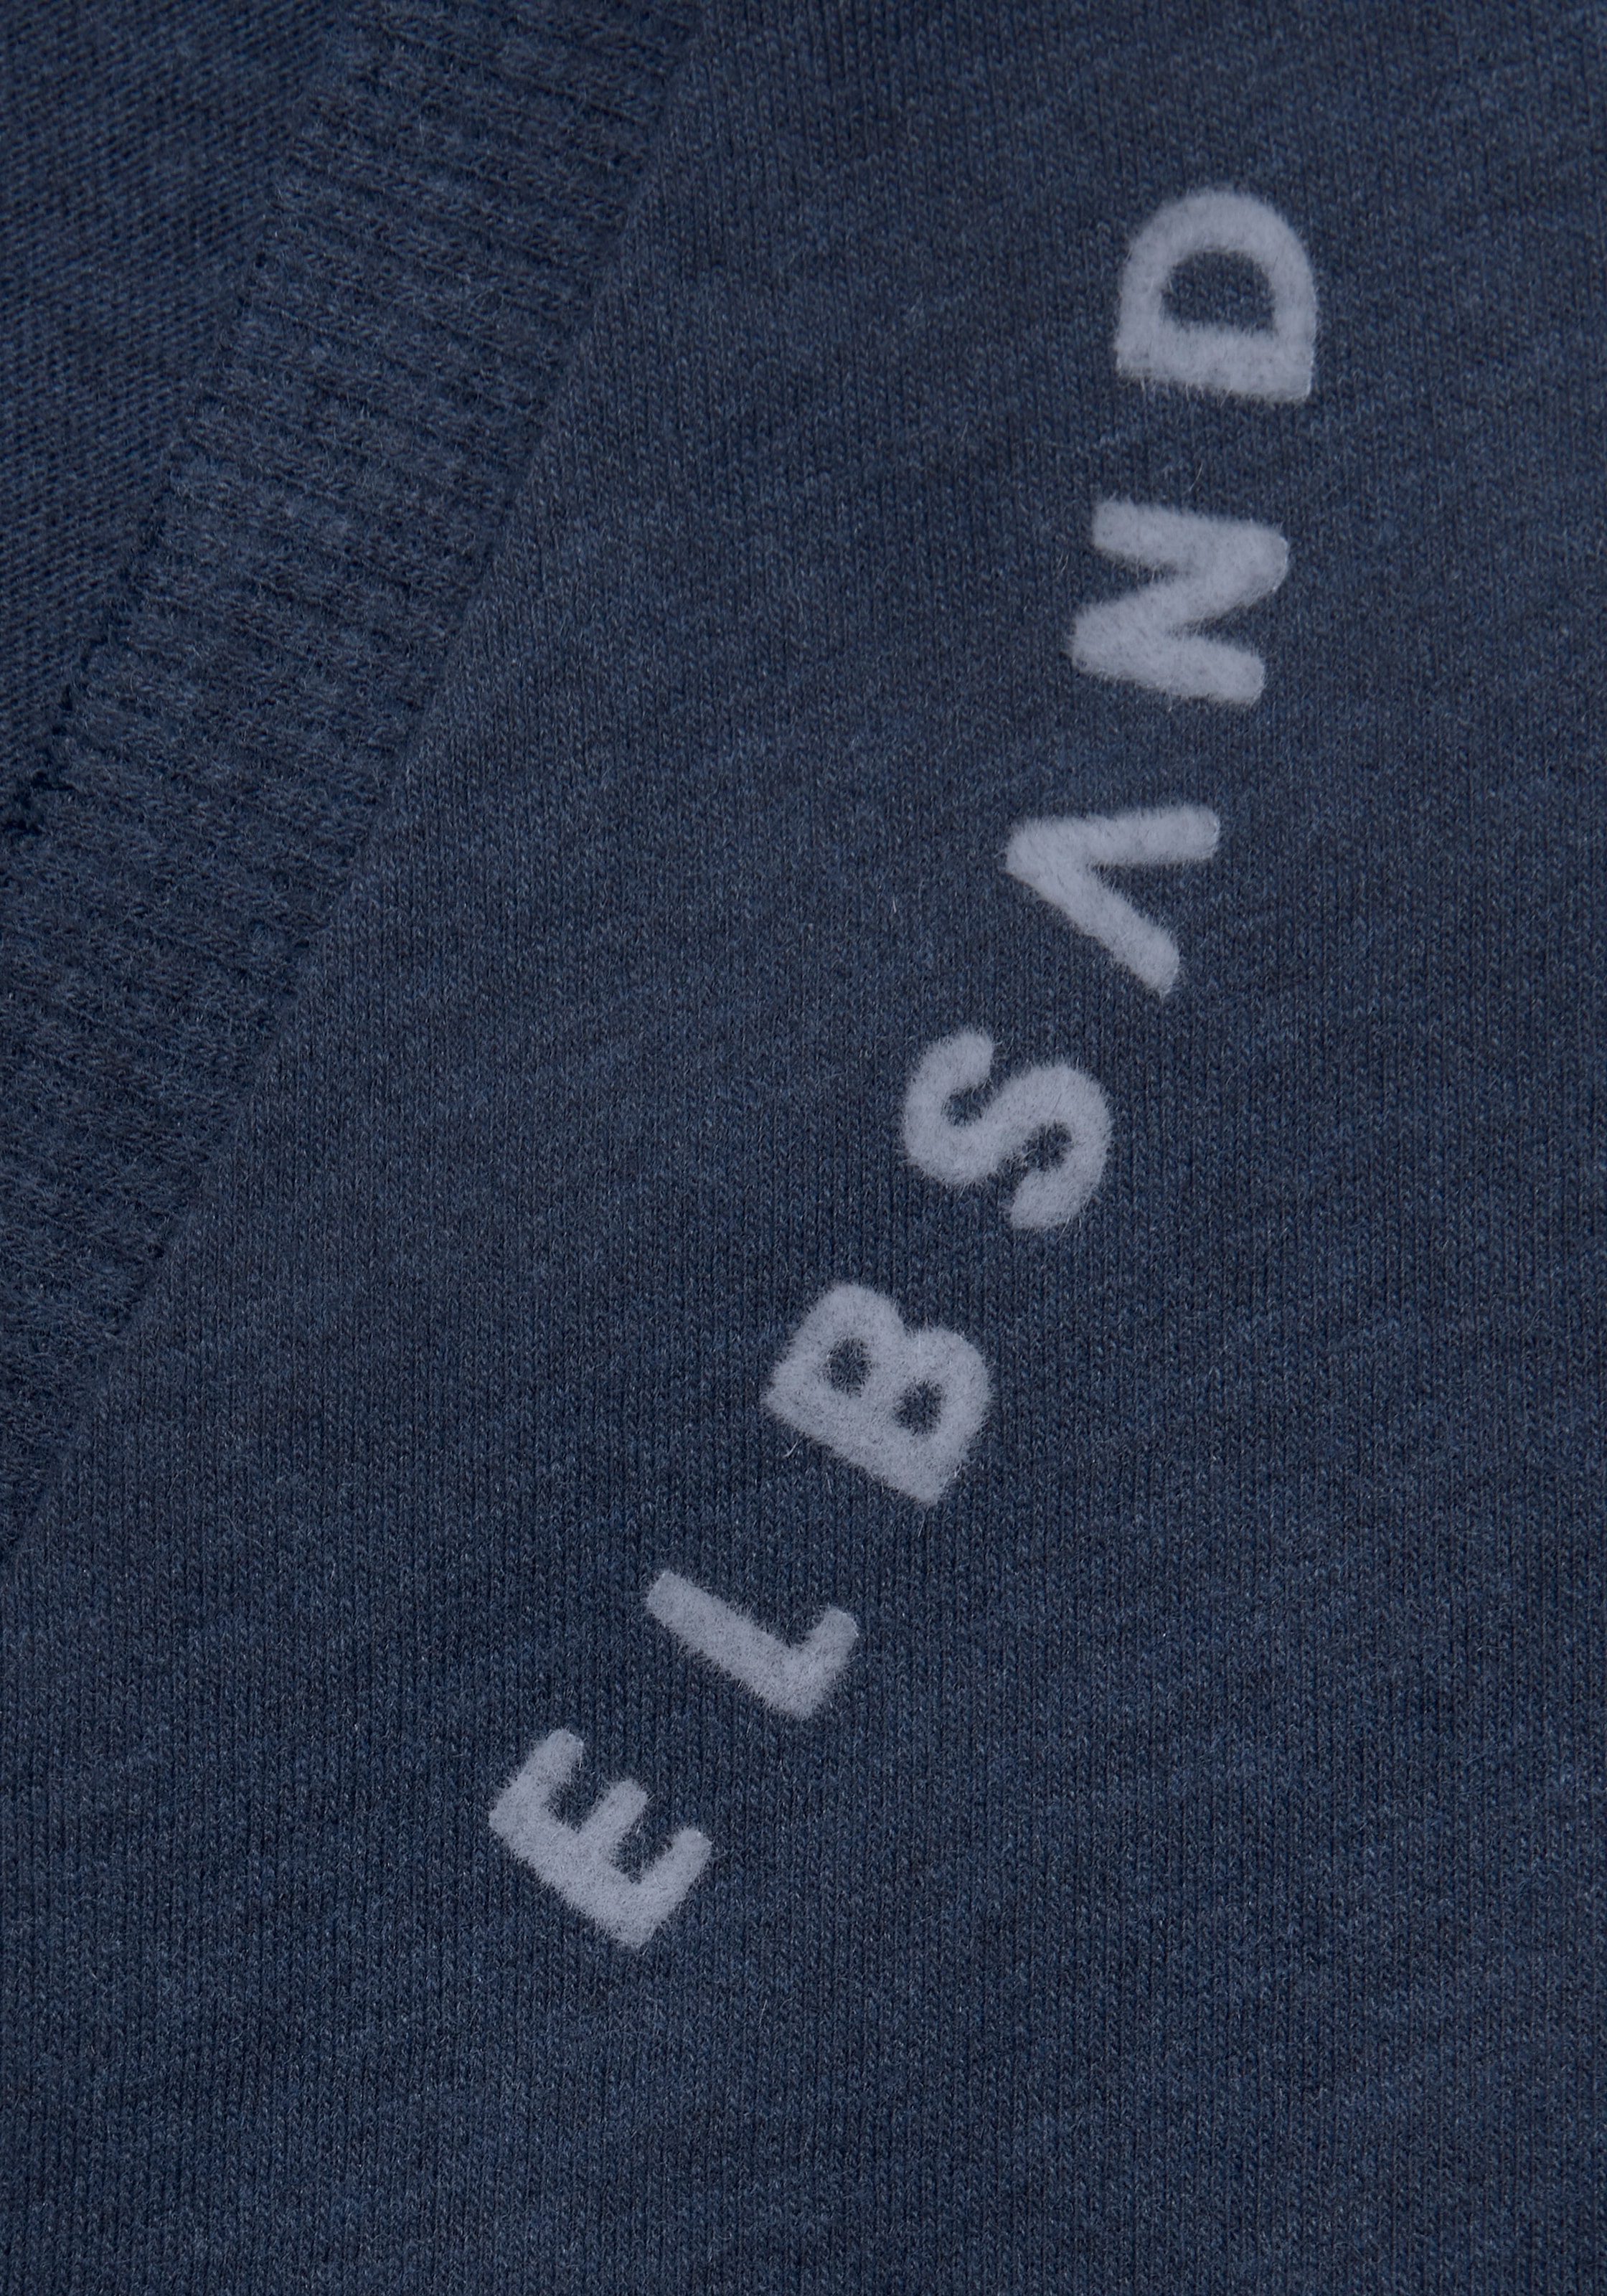 Elbsand T-Shirt »Talvi«, mit Flockprint und V-Ausschnitt, Kurzarmshirt aus Baumwoll-Mix